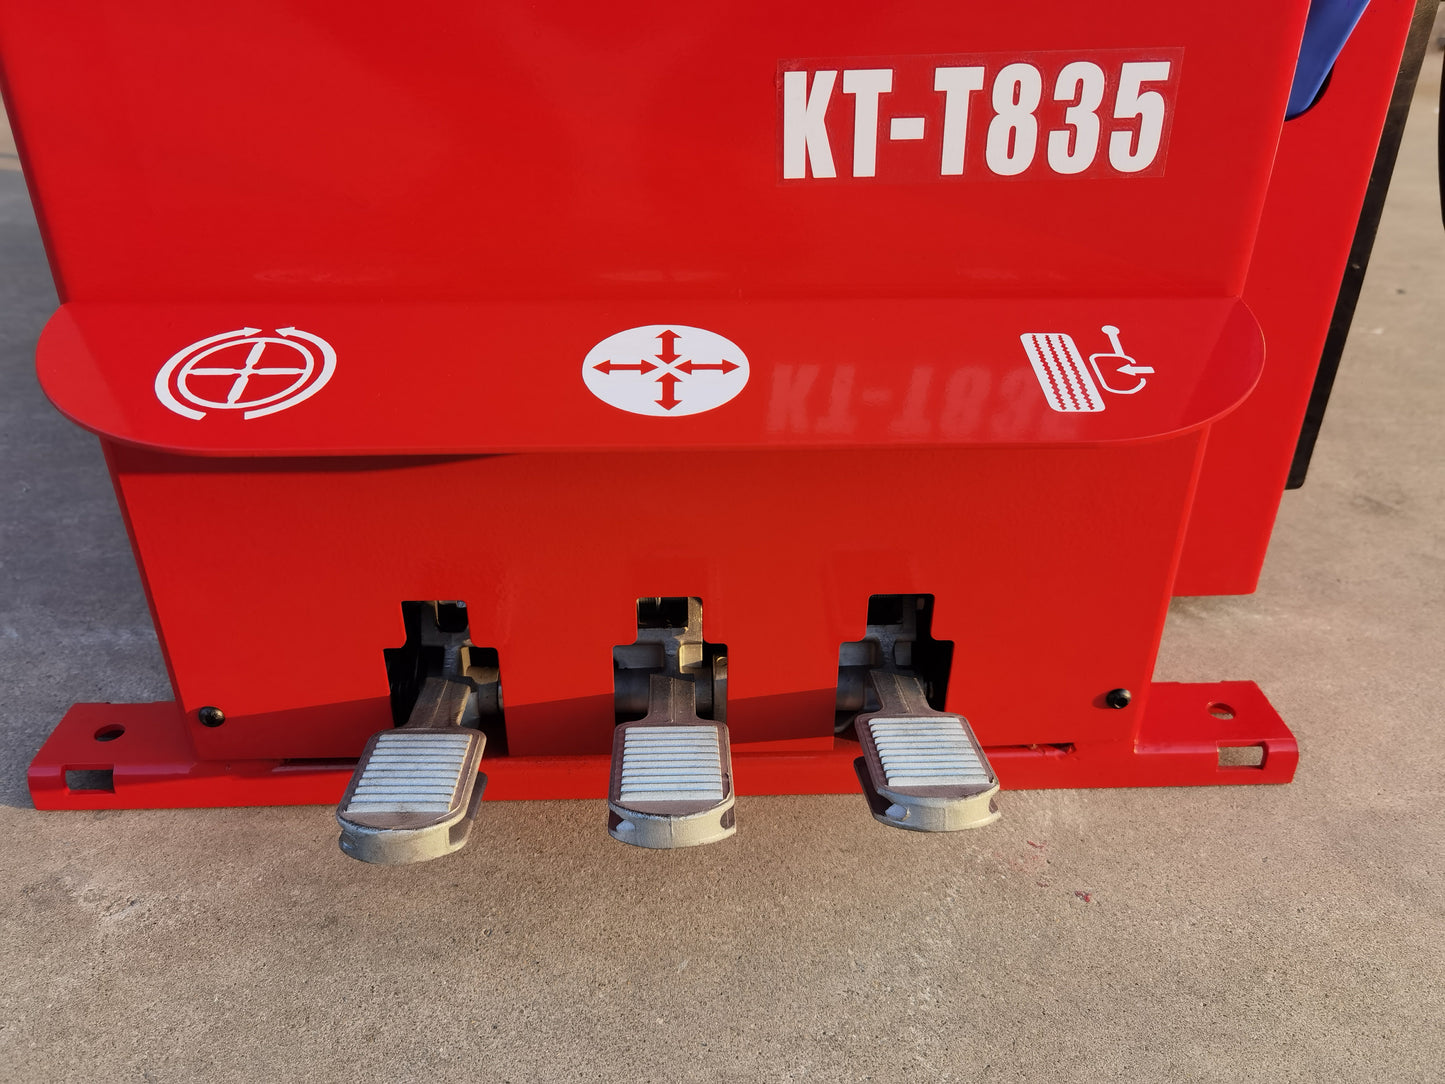 KT-T835 Wheel Clamp Tire Changer Machine